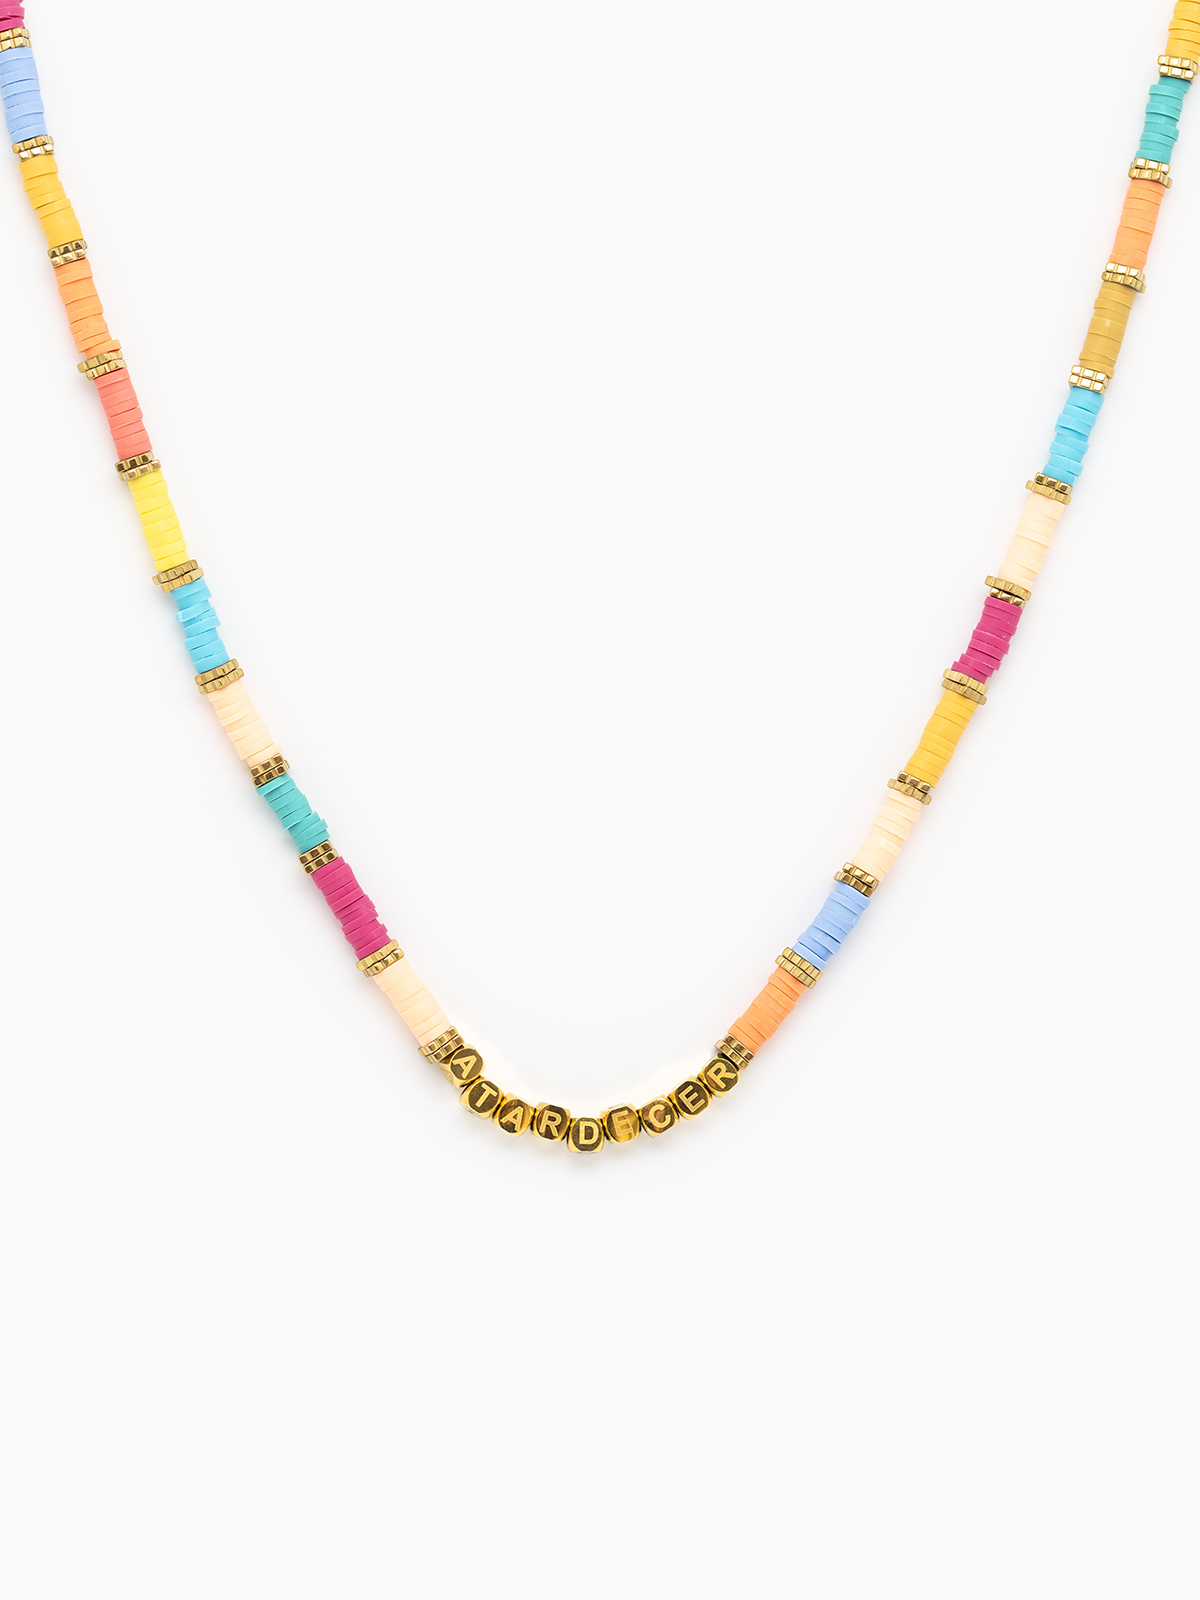 Collar con piedras de colores azules, amarillos y rosa, modelo Atardecer de la colección de verano de la marca de joyas AmaloA.